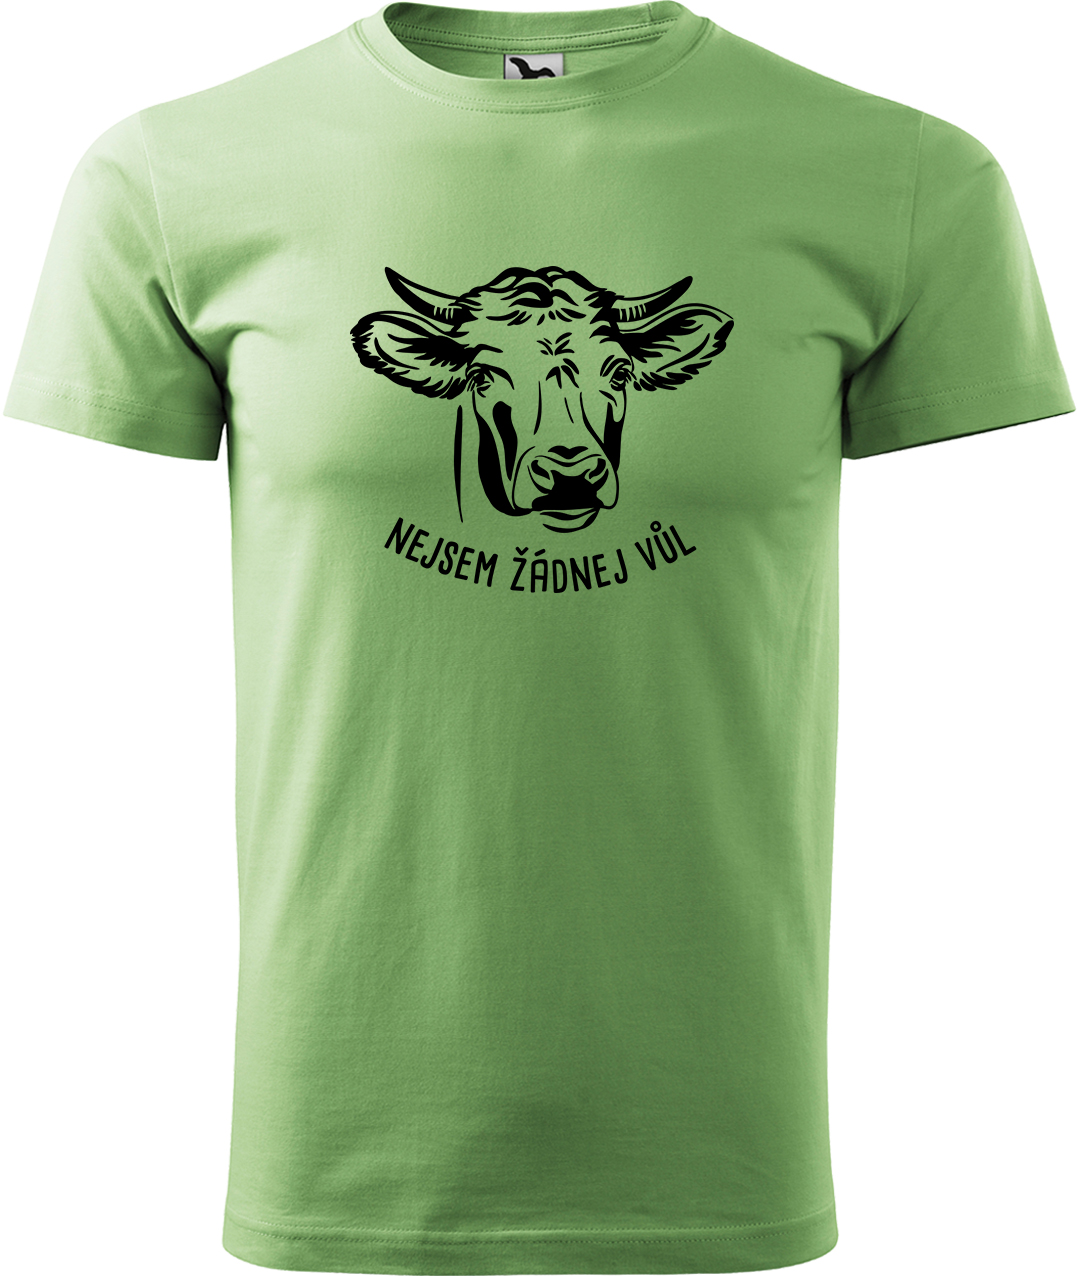 Pánské tričko s krávou - Nejsem žádnej vůl Velikost: M, Barva: Trávově zelená (39), Střih: pánský